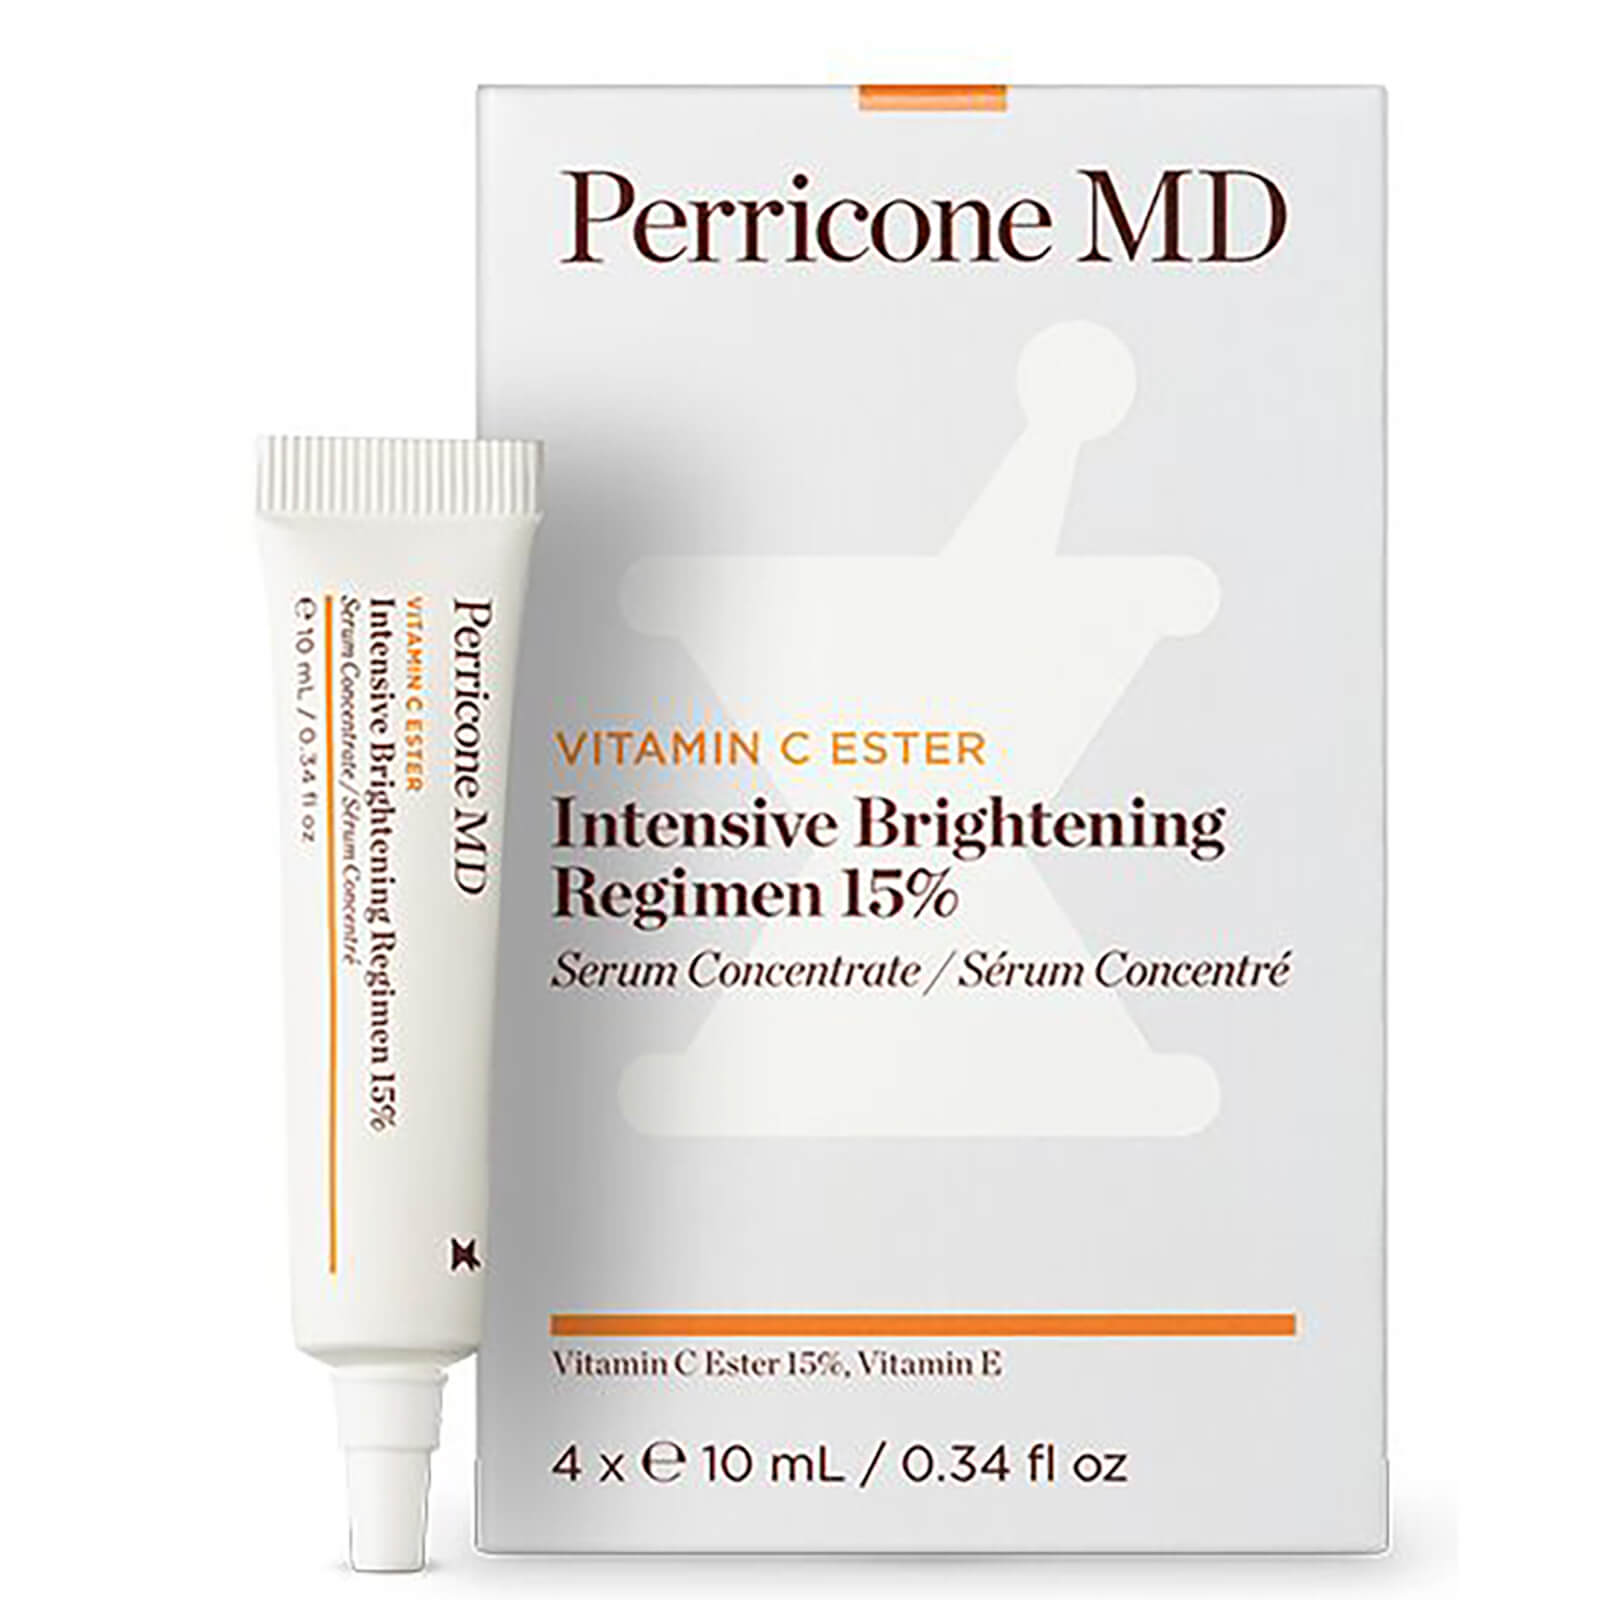 Perricone MD Vitamin C Ester 15 Intensive Brightening Regimen